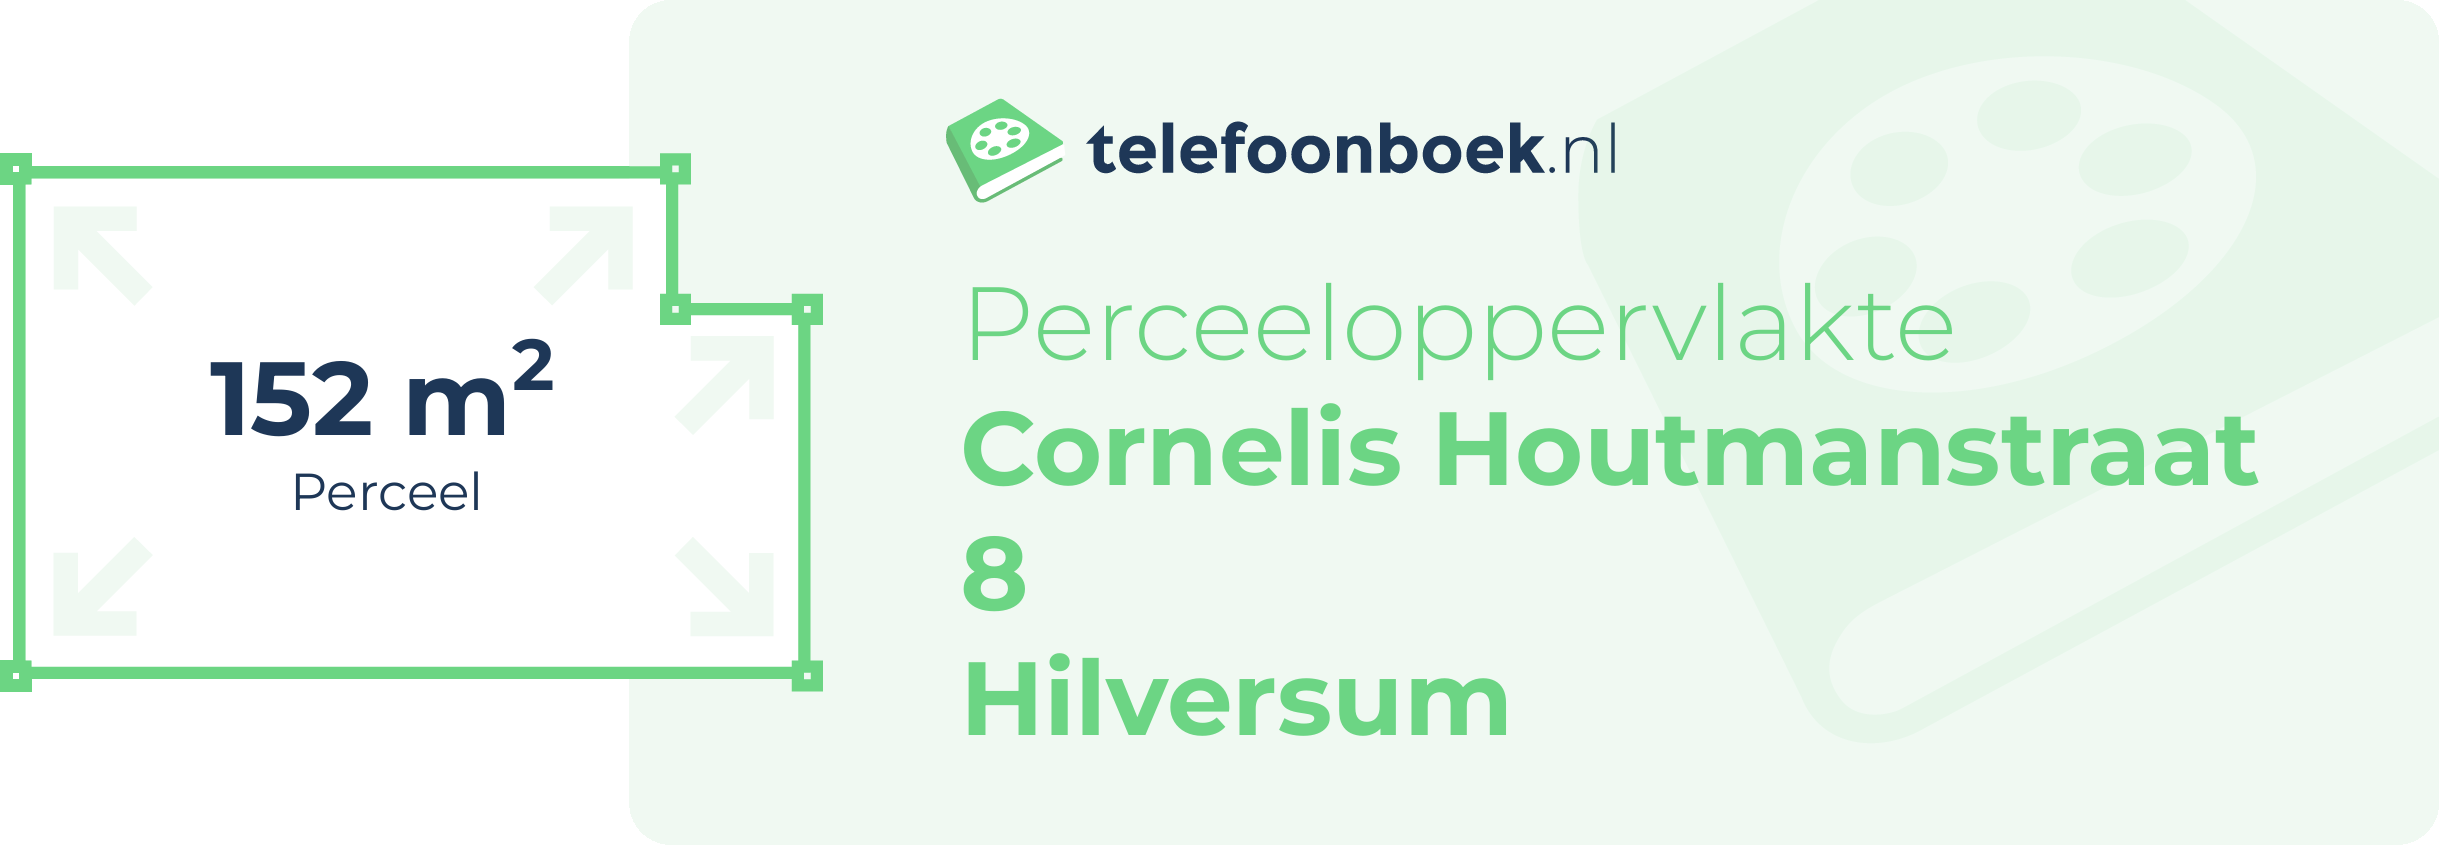 Perceeloppervlakte Cornelis Houtmanstraat 8 Hilversum